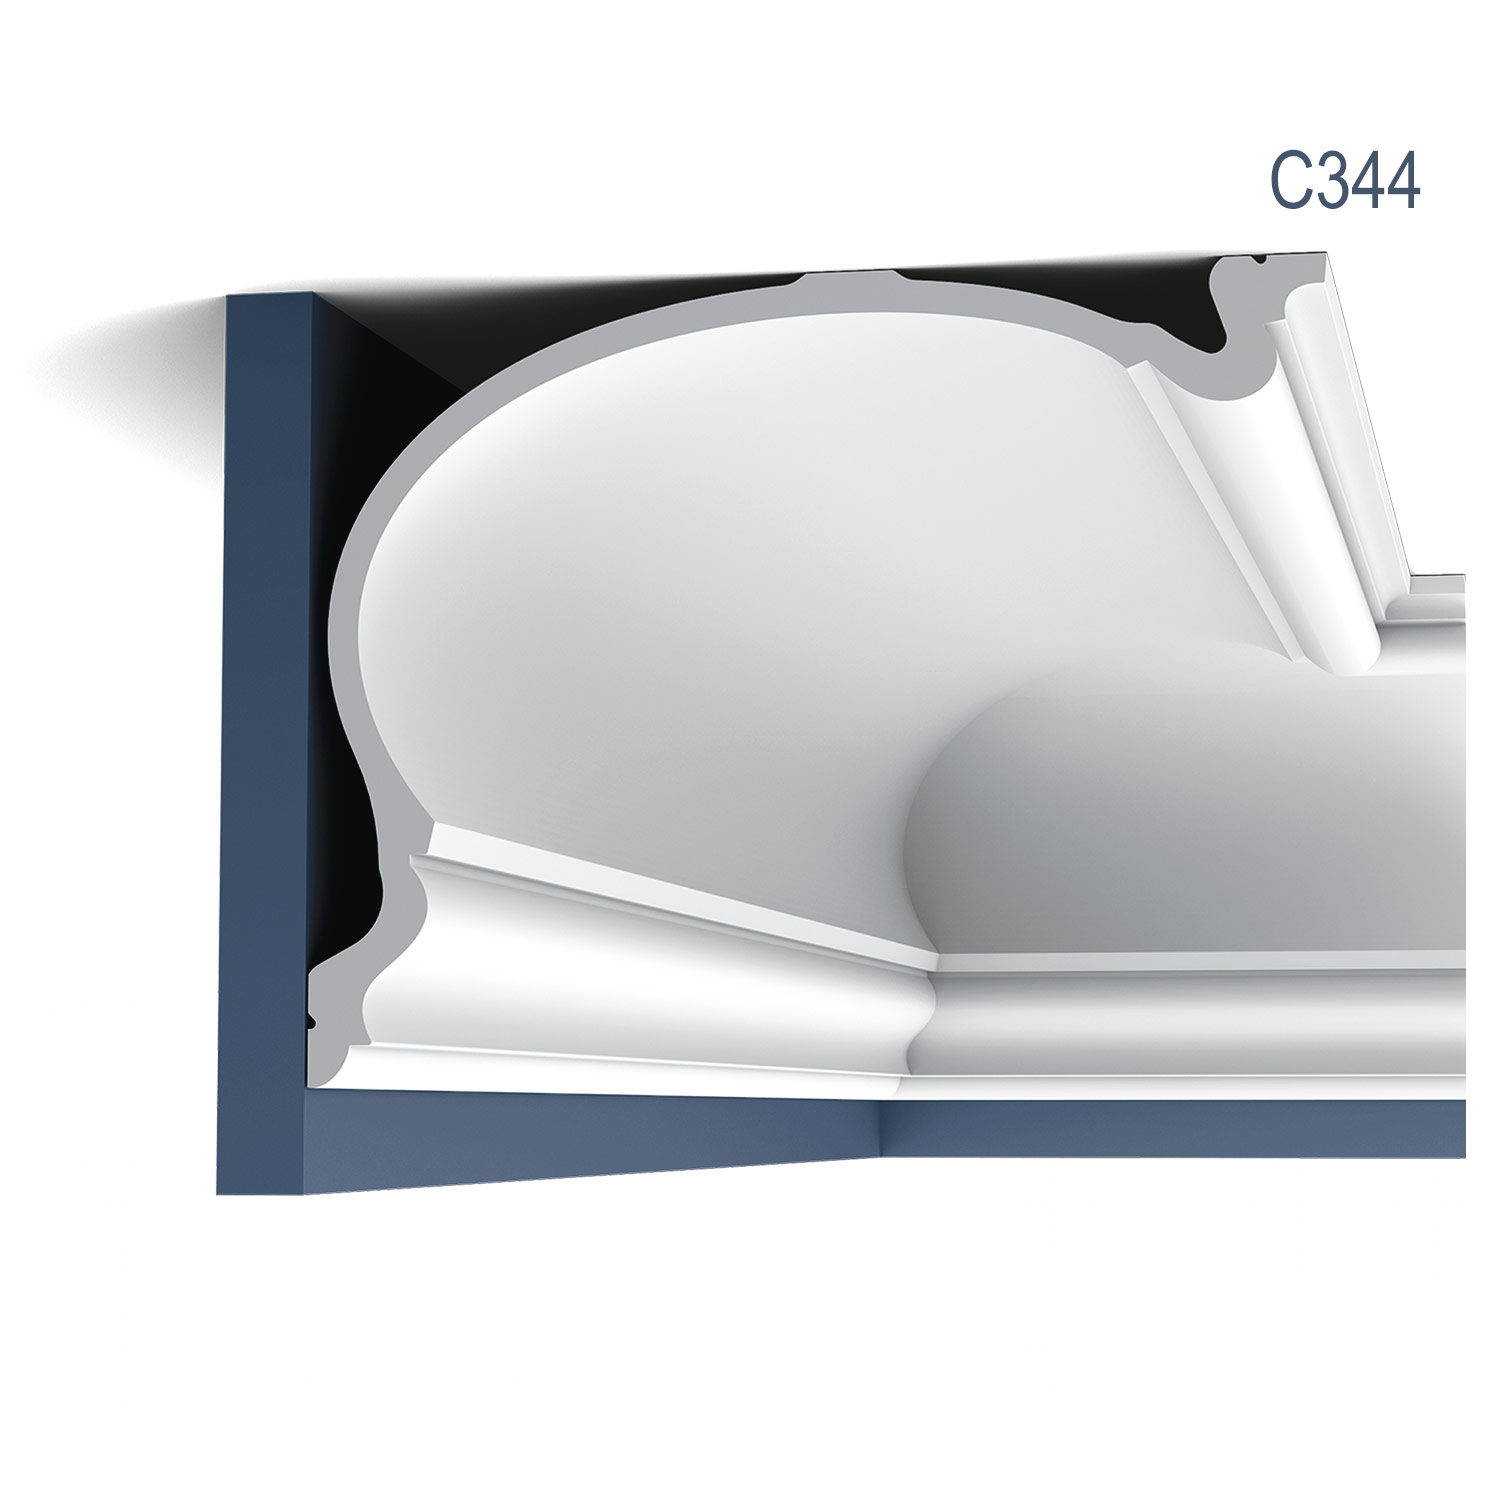 Cornisa Luxxus C344, Dimensiuni: 200 X 35 X 27.3 cm, Orac Decor